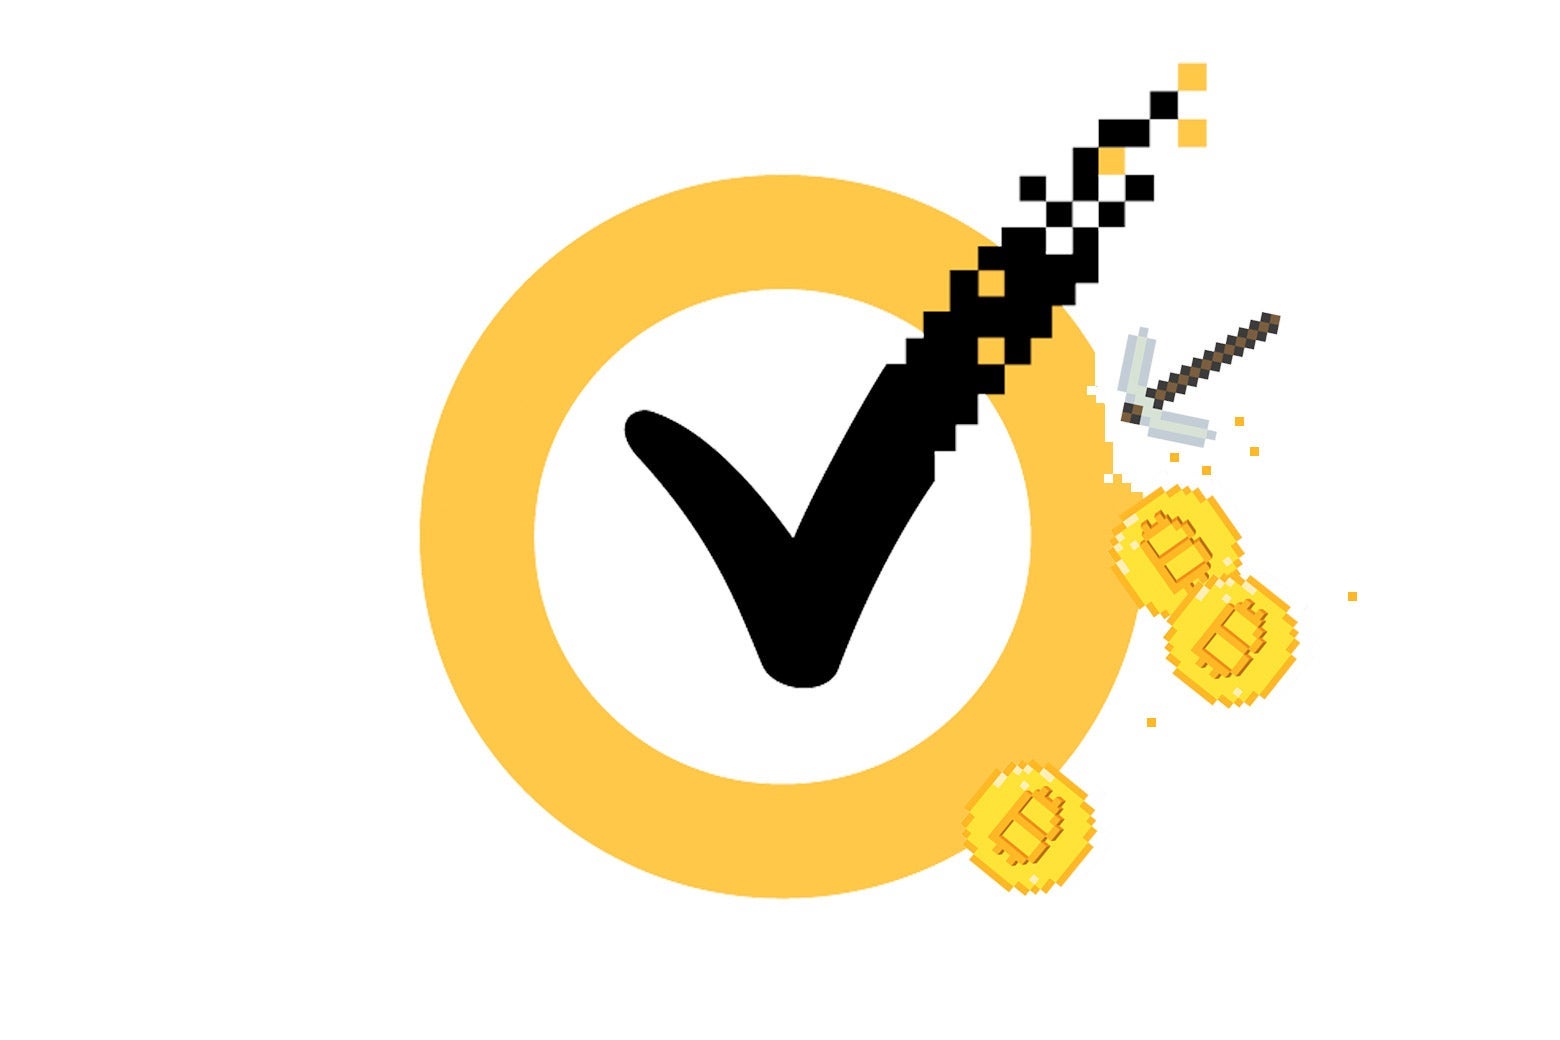 A Norton logo shows a checkmark in a circle, with Bitcoin logos and mining axes on the edges. 